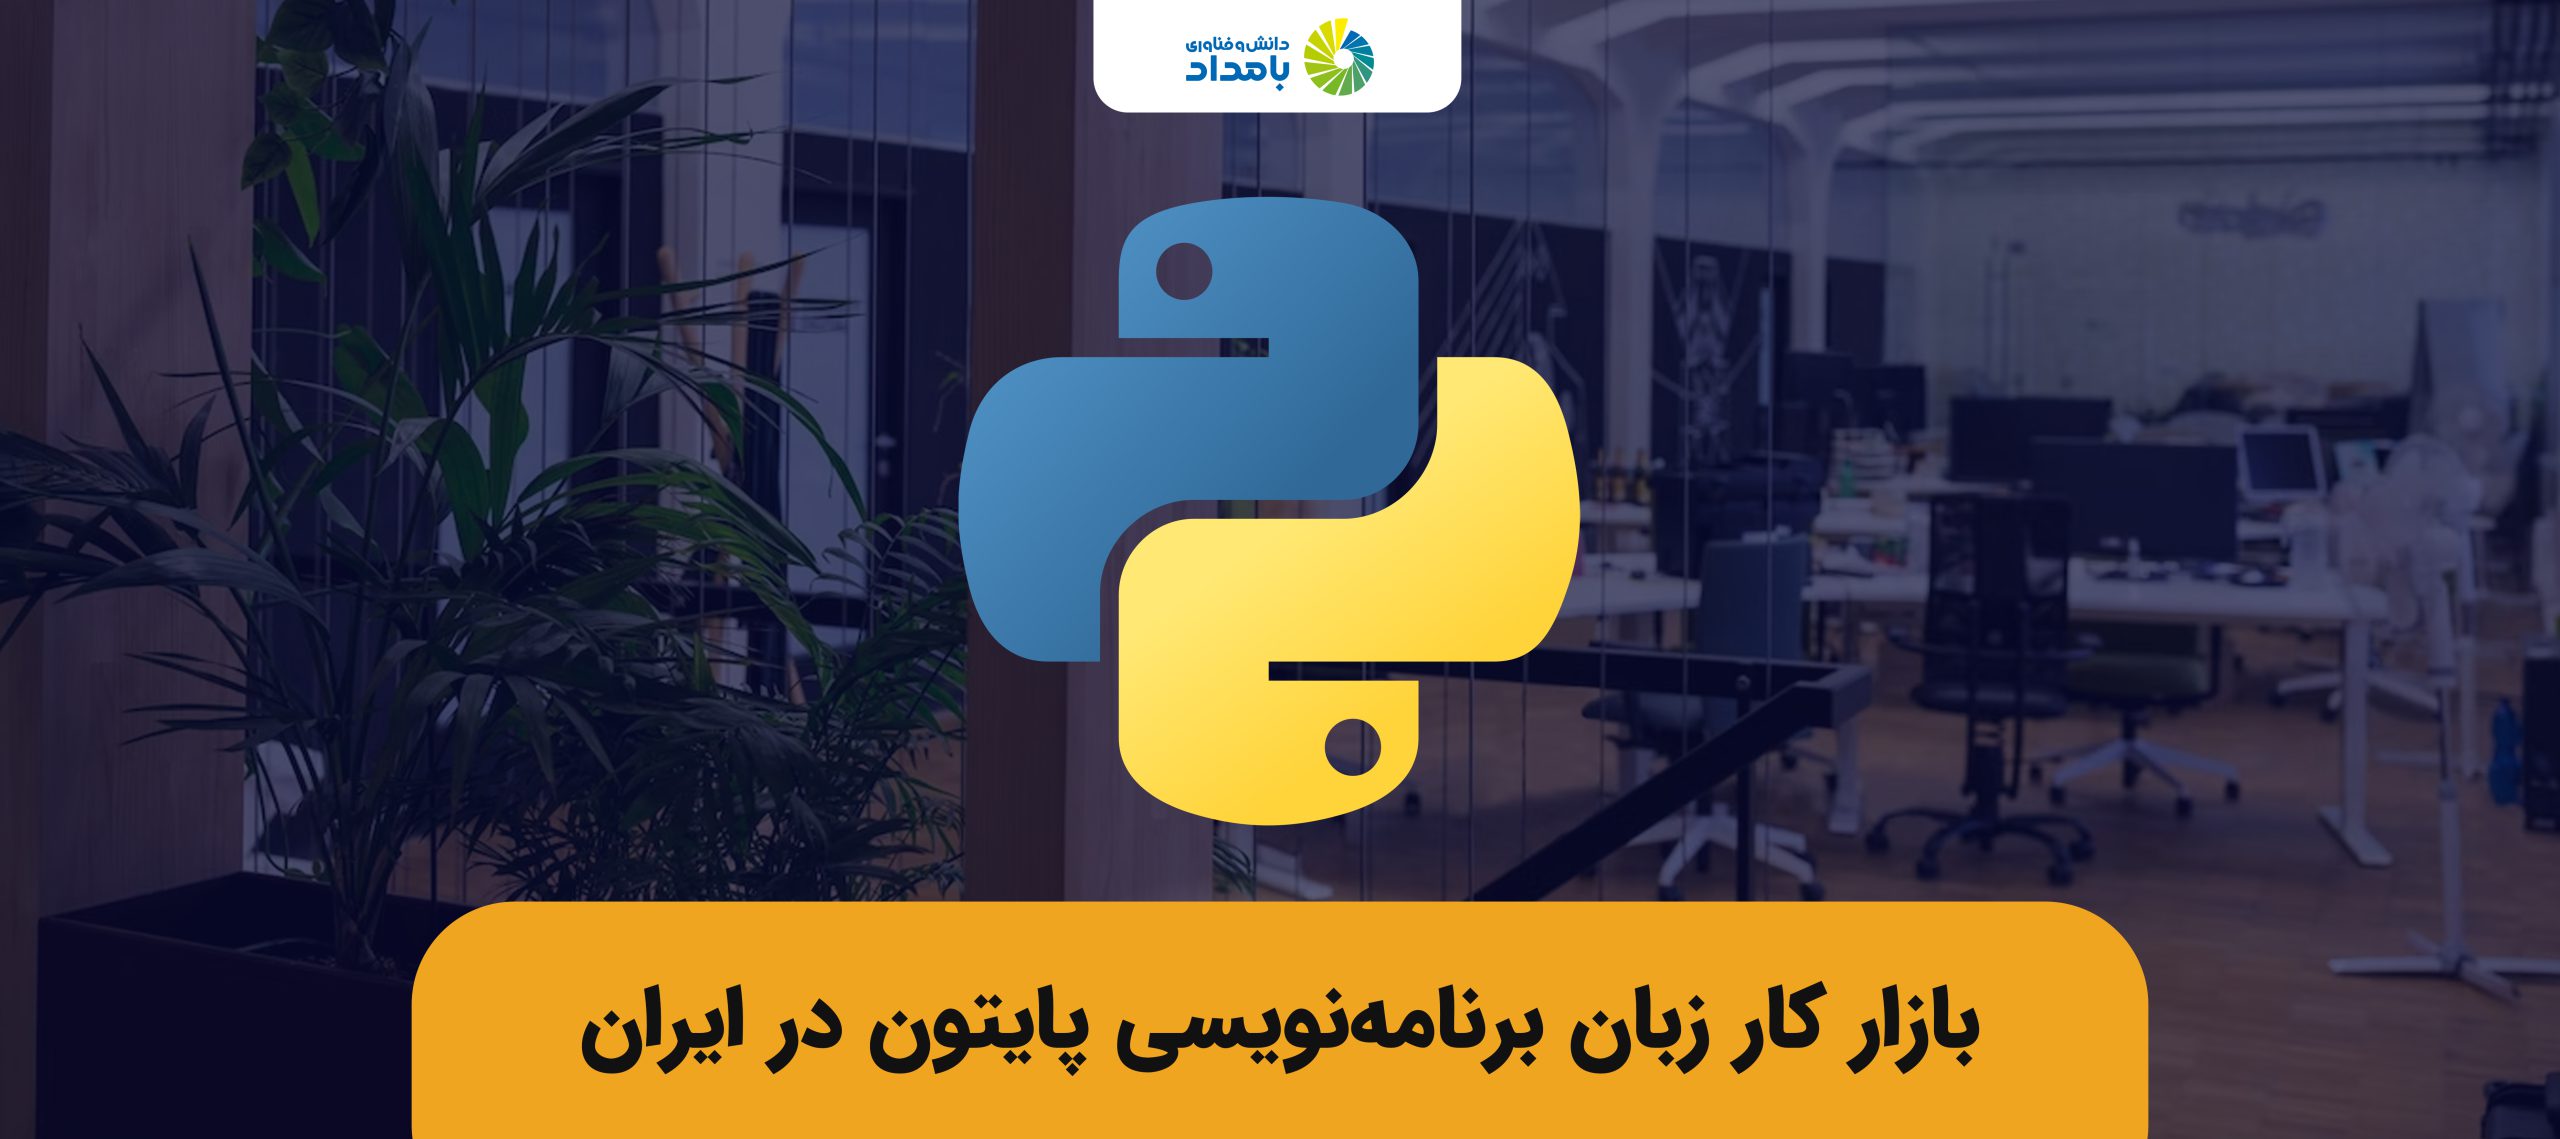 آیا بازار کار زبان برنامه نویسی پایتون در ایران خوب است؟